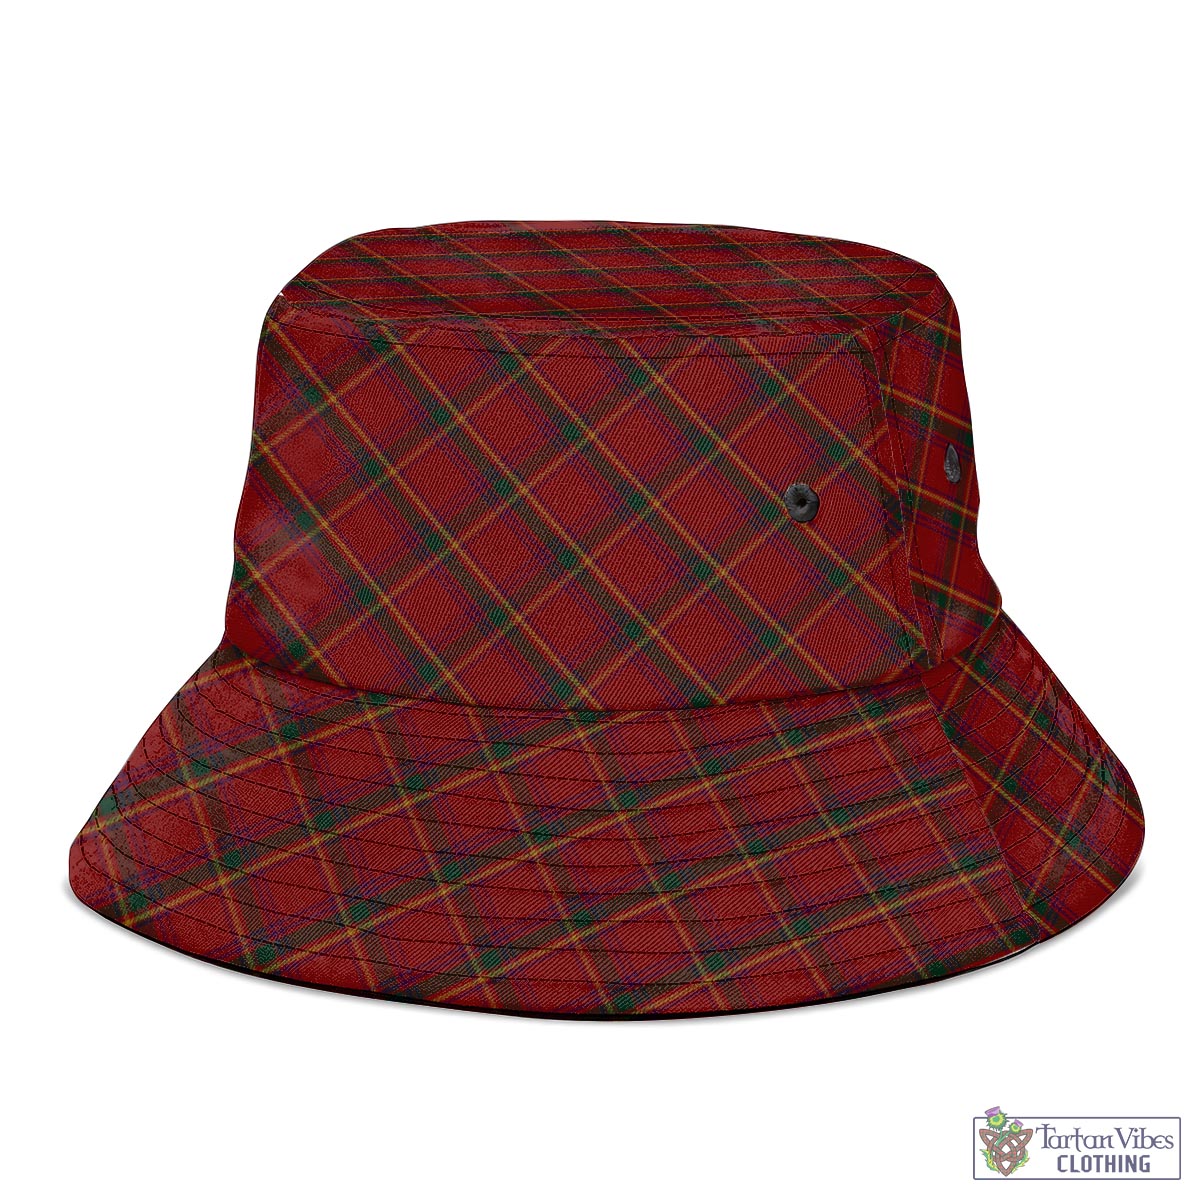 Tartan Vibes Clothing Galway County Ireland Tartan Bucket Hat